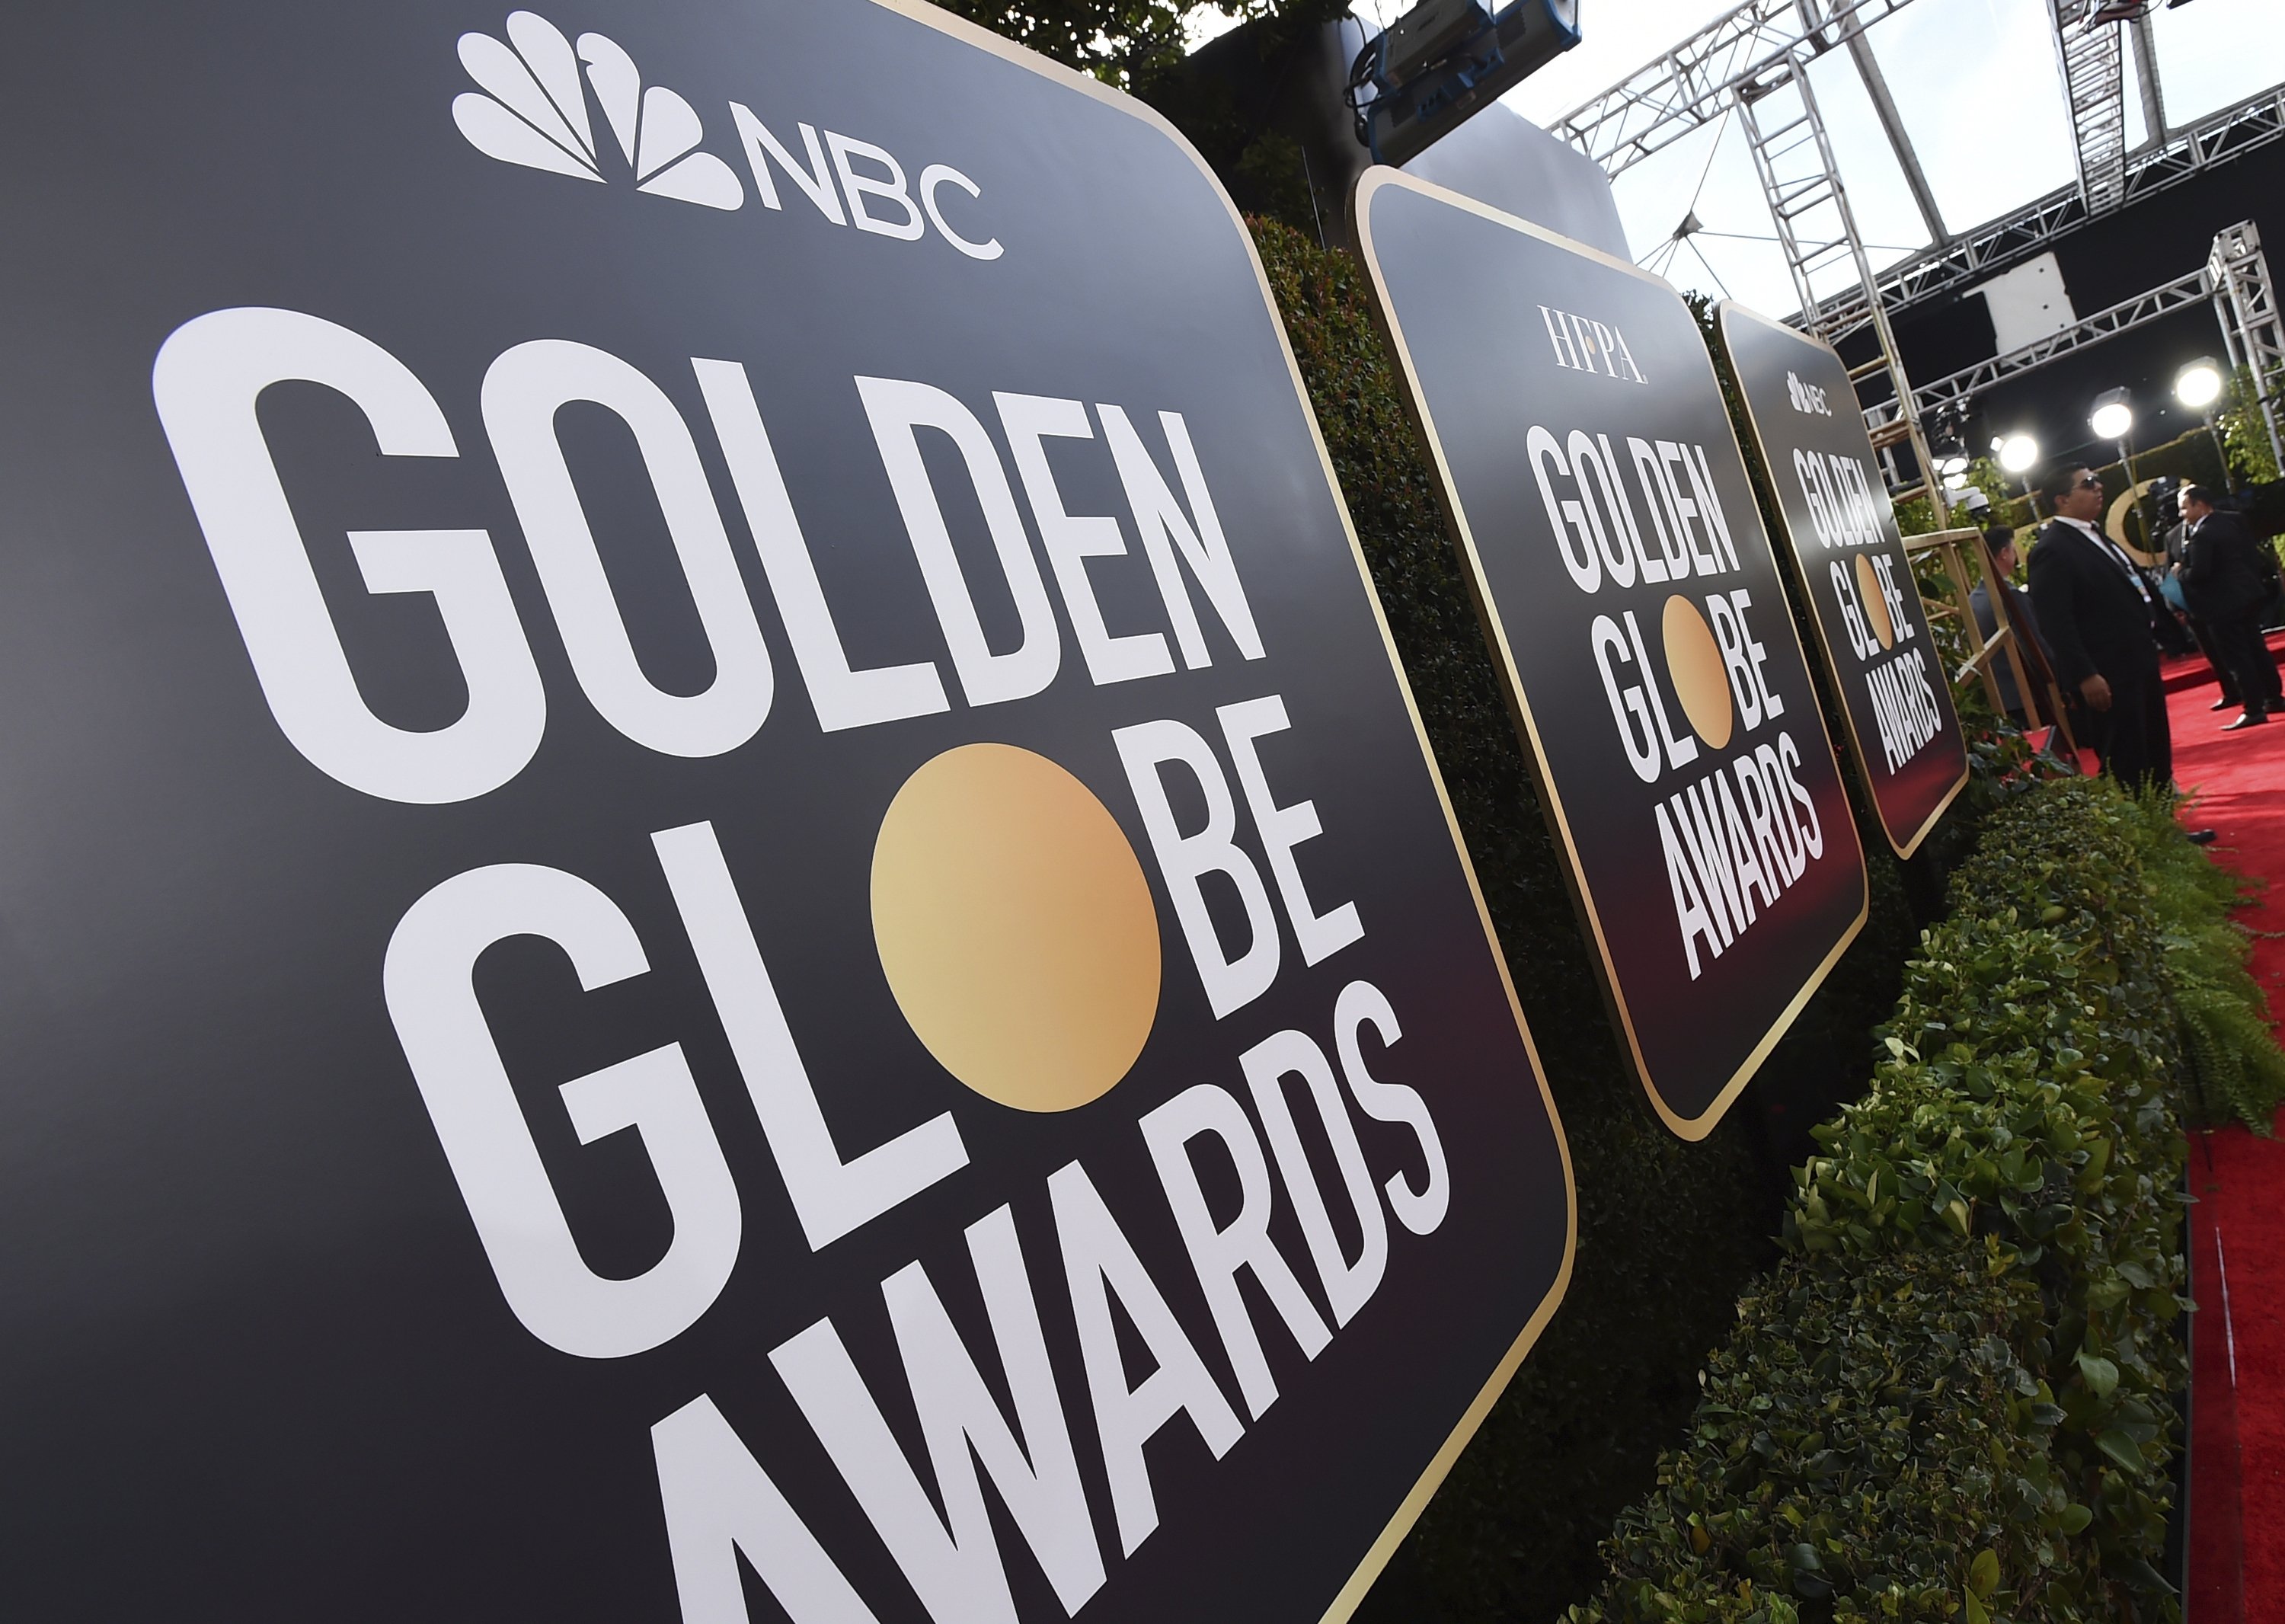 负责转播金球奖颁奖典礼的NBC也“加入杯葛”，发表声明宣告不会转播2022年金球奖典礼。

